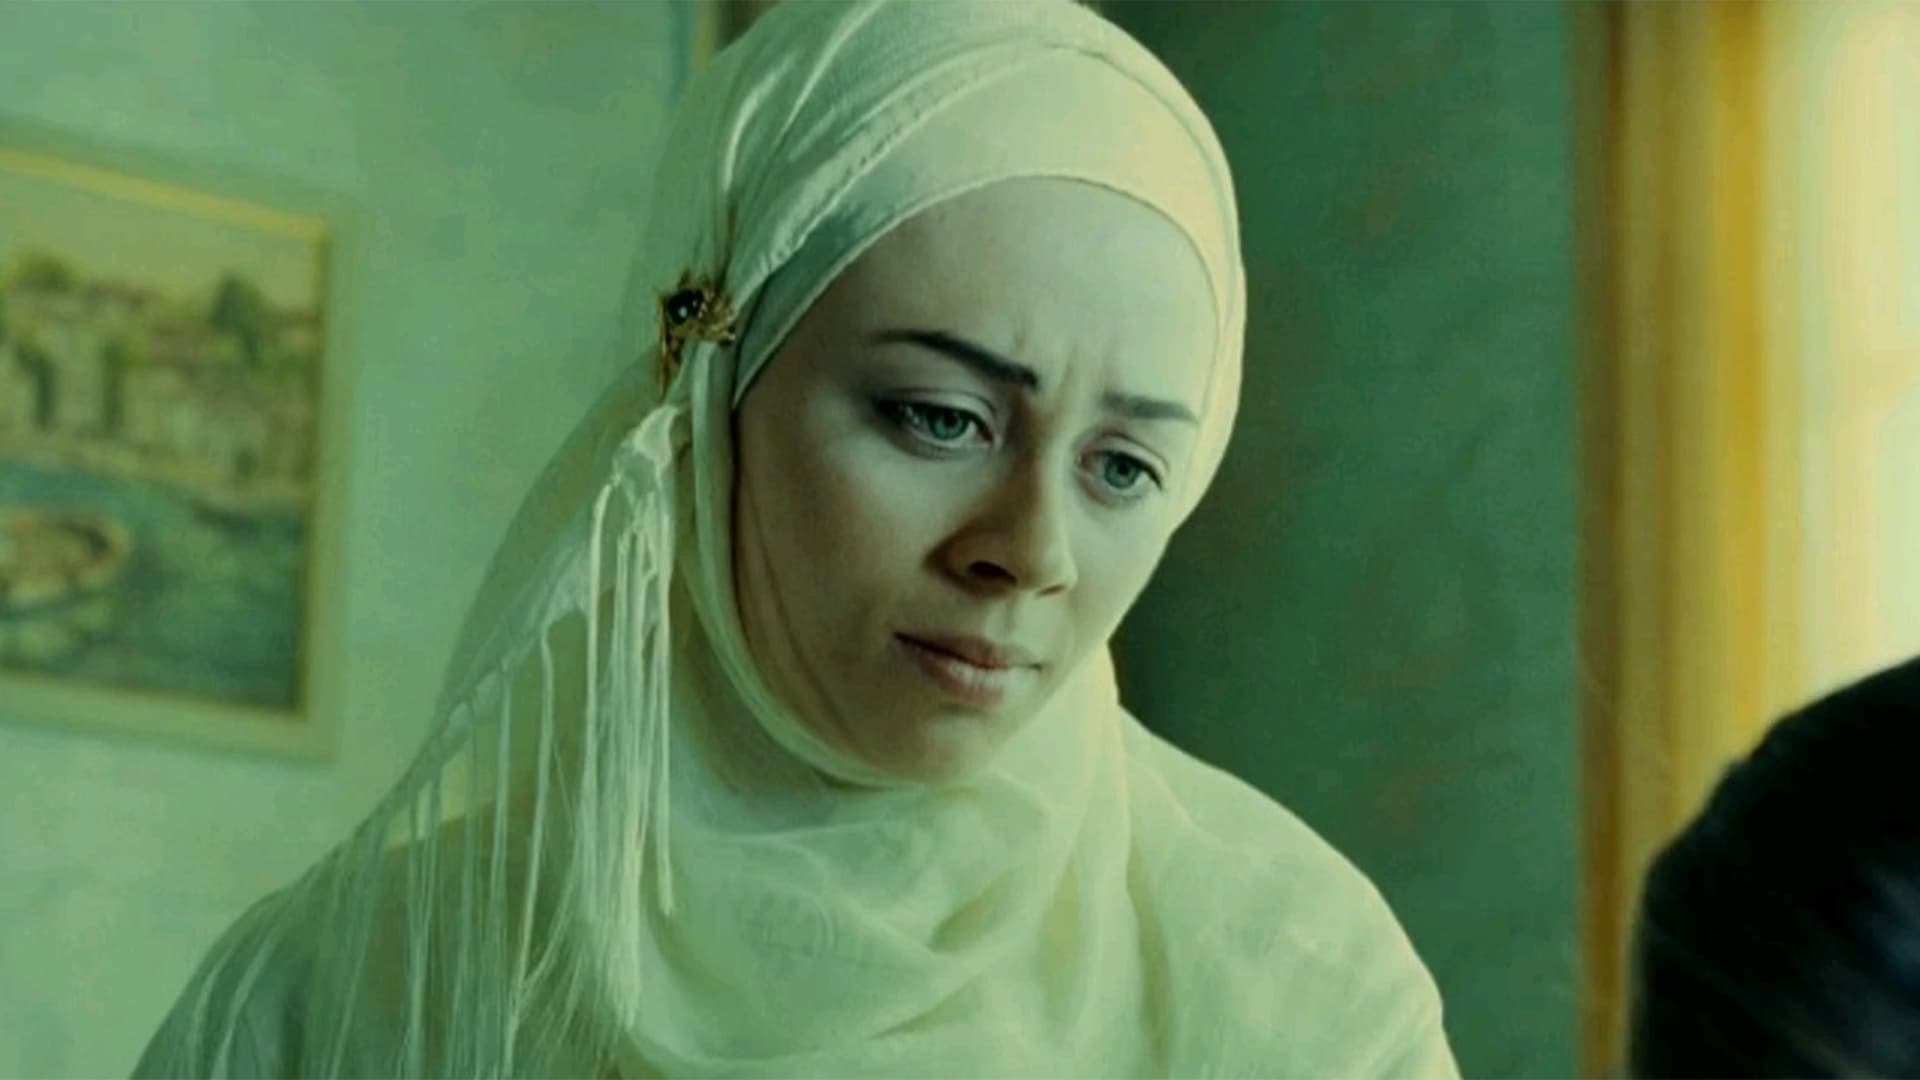 Beyza'nın Kadınları (2006)